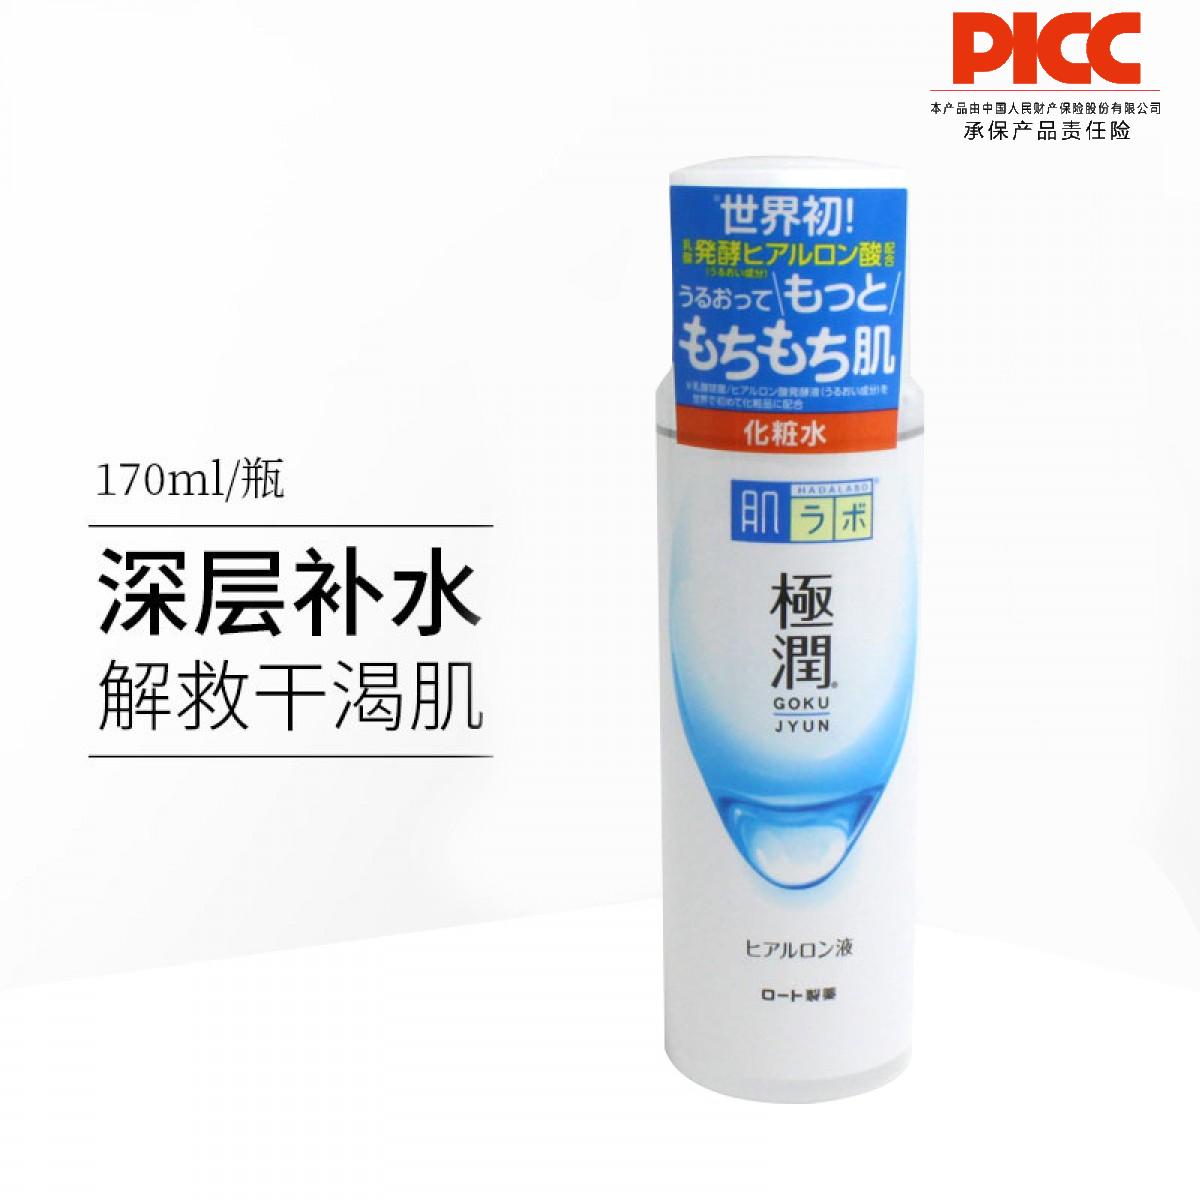 【保稅】日本ROHTO/樂敦肌研極潤玻尿霜補水保濕化妝水170ml/瓶